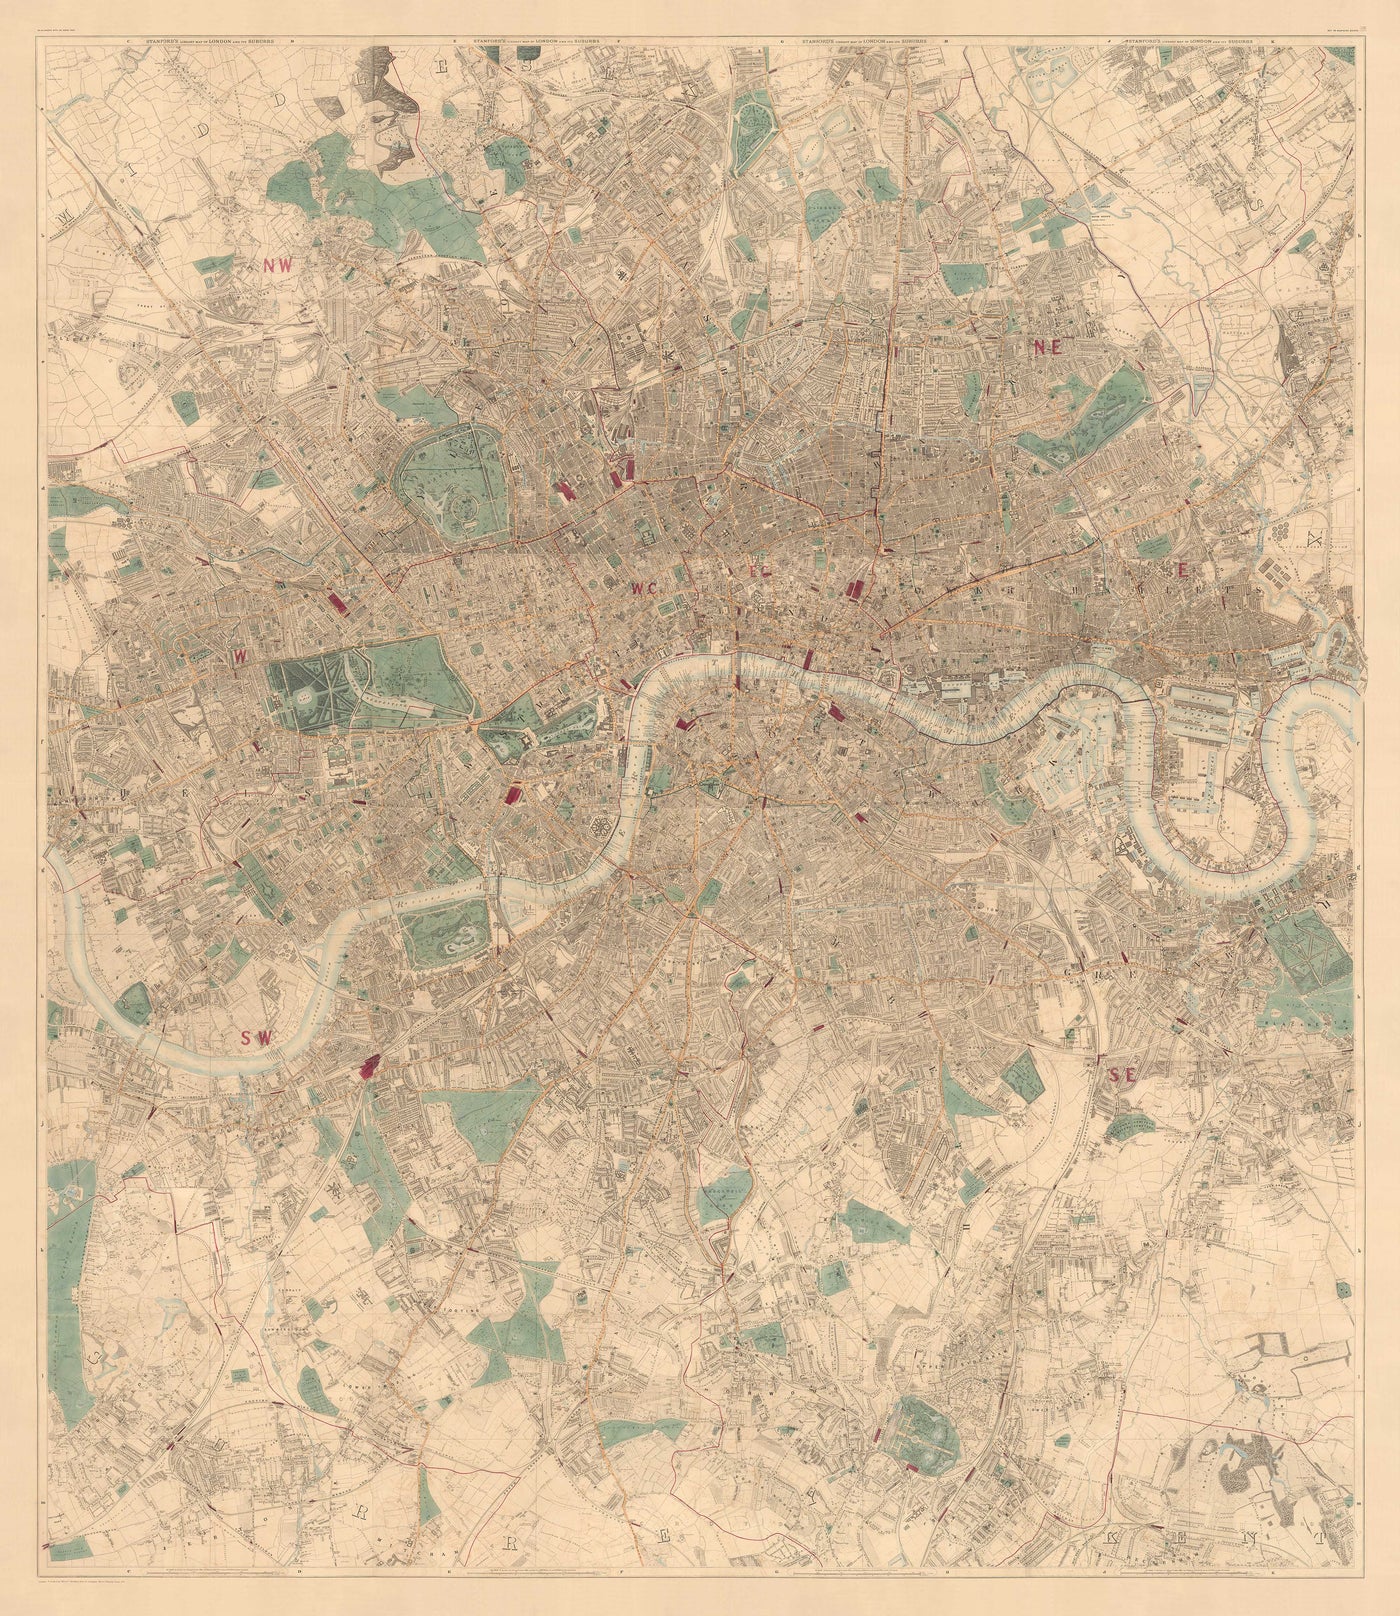 Große alte Karte von London von Edward Stanford (1862, 1891) - Monochrom, Blaue Themse oder handkoloriert